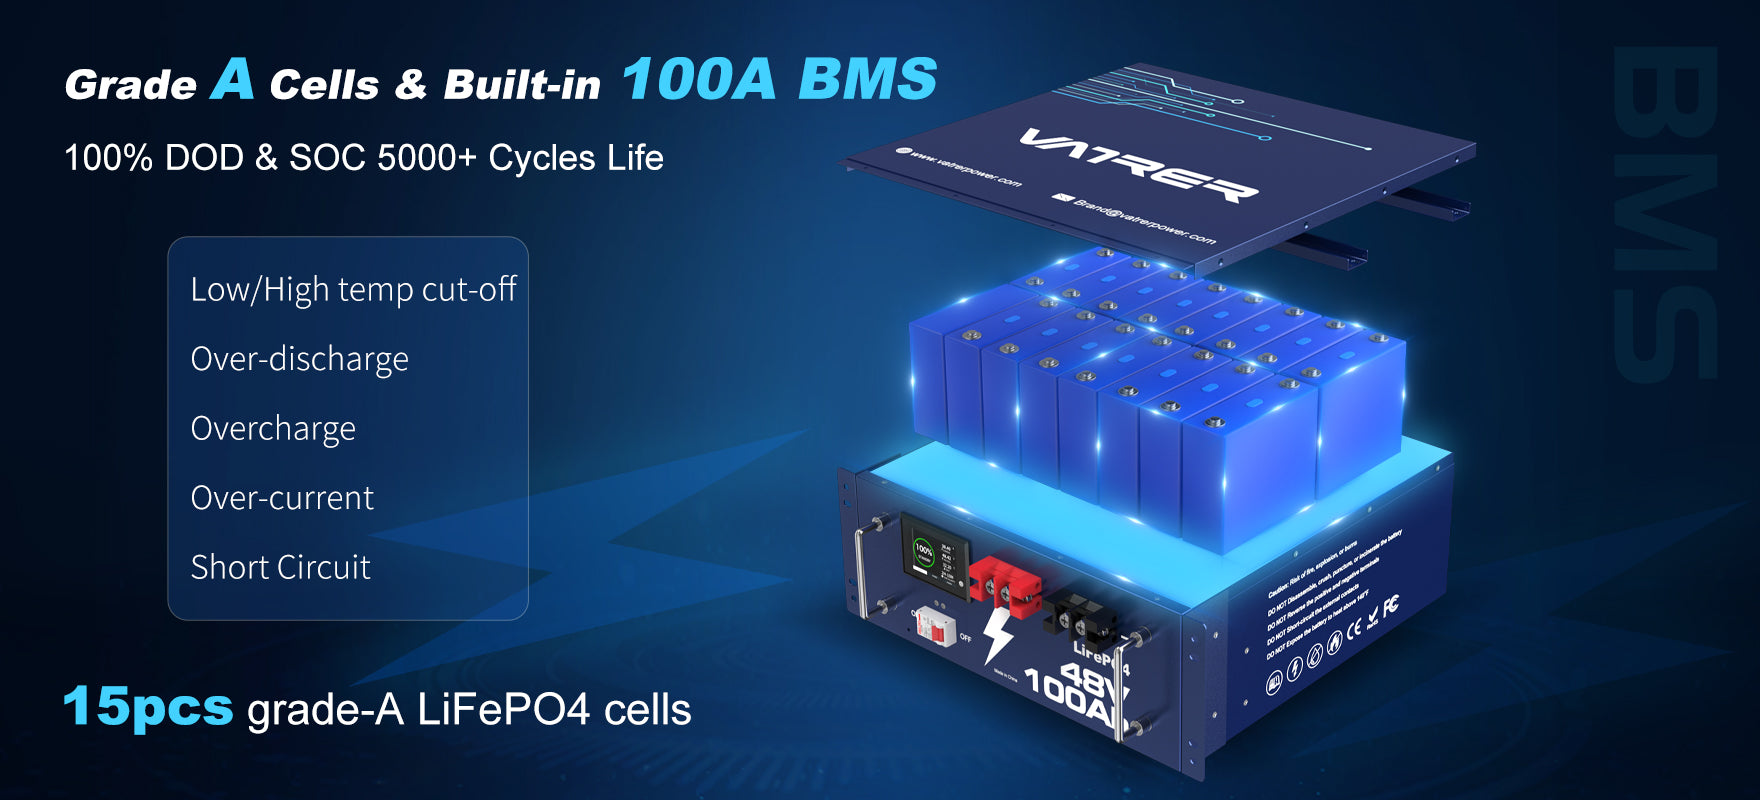 Grade A Cells & Built-in 100A BMS